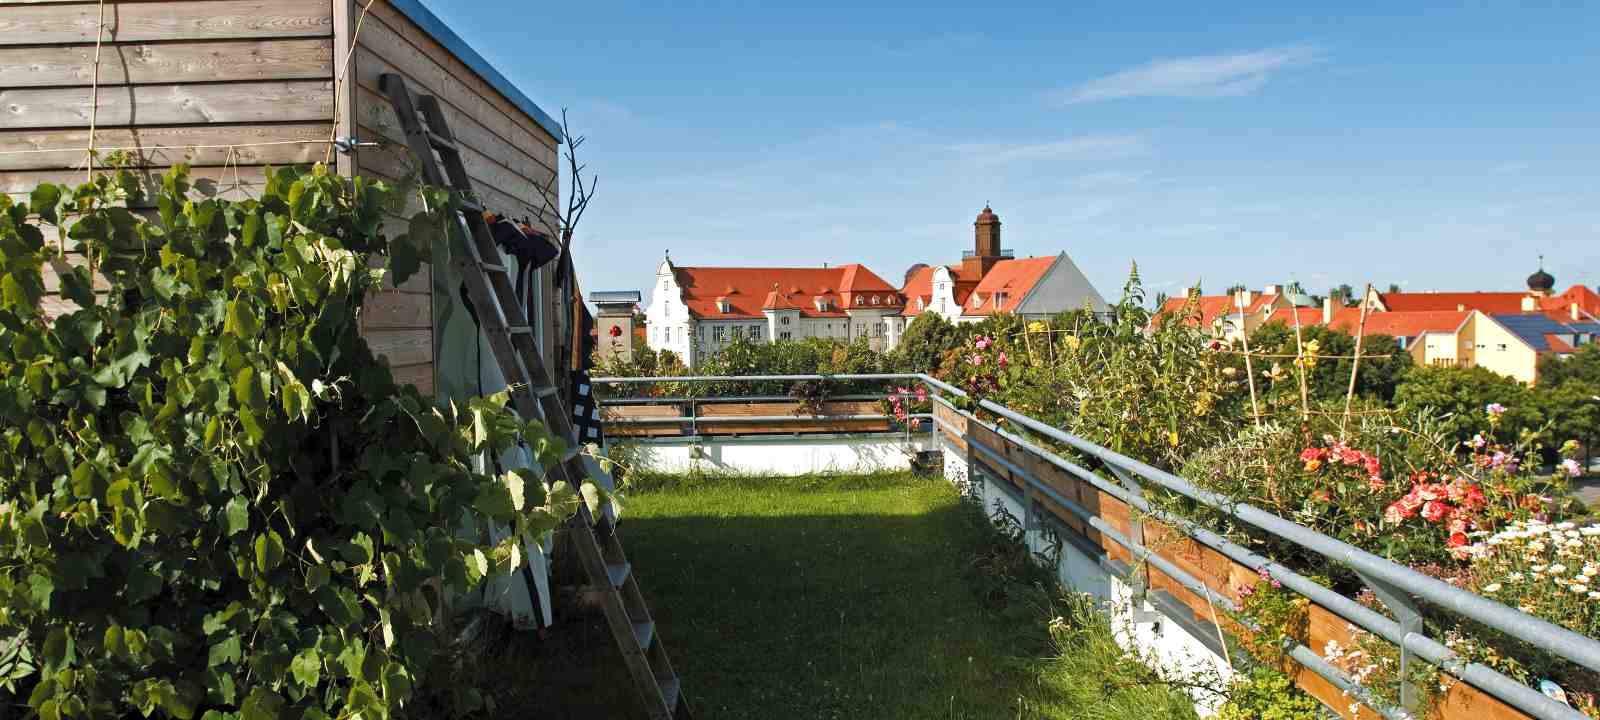 Dachgarten mit Rasen und Weinreben